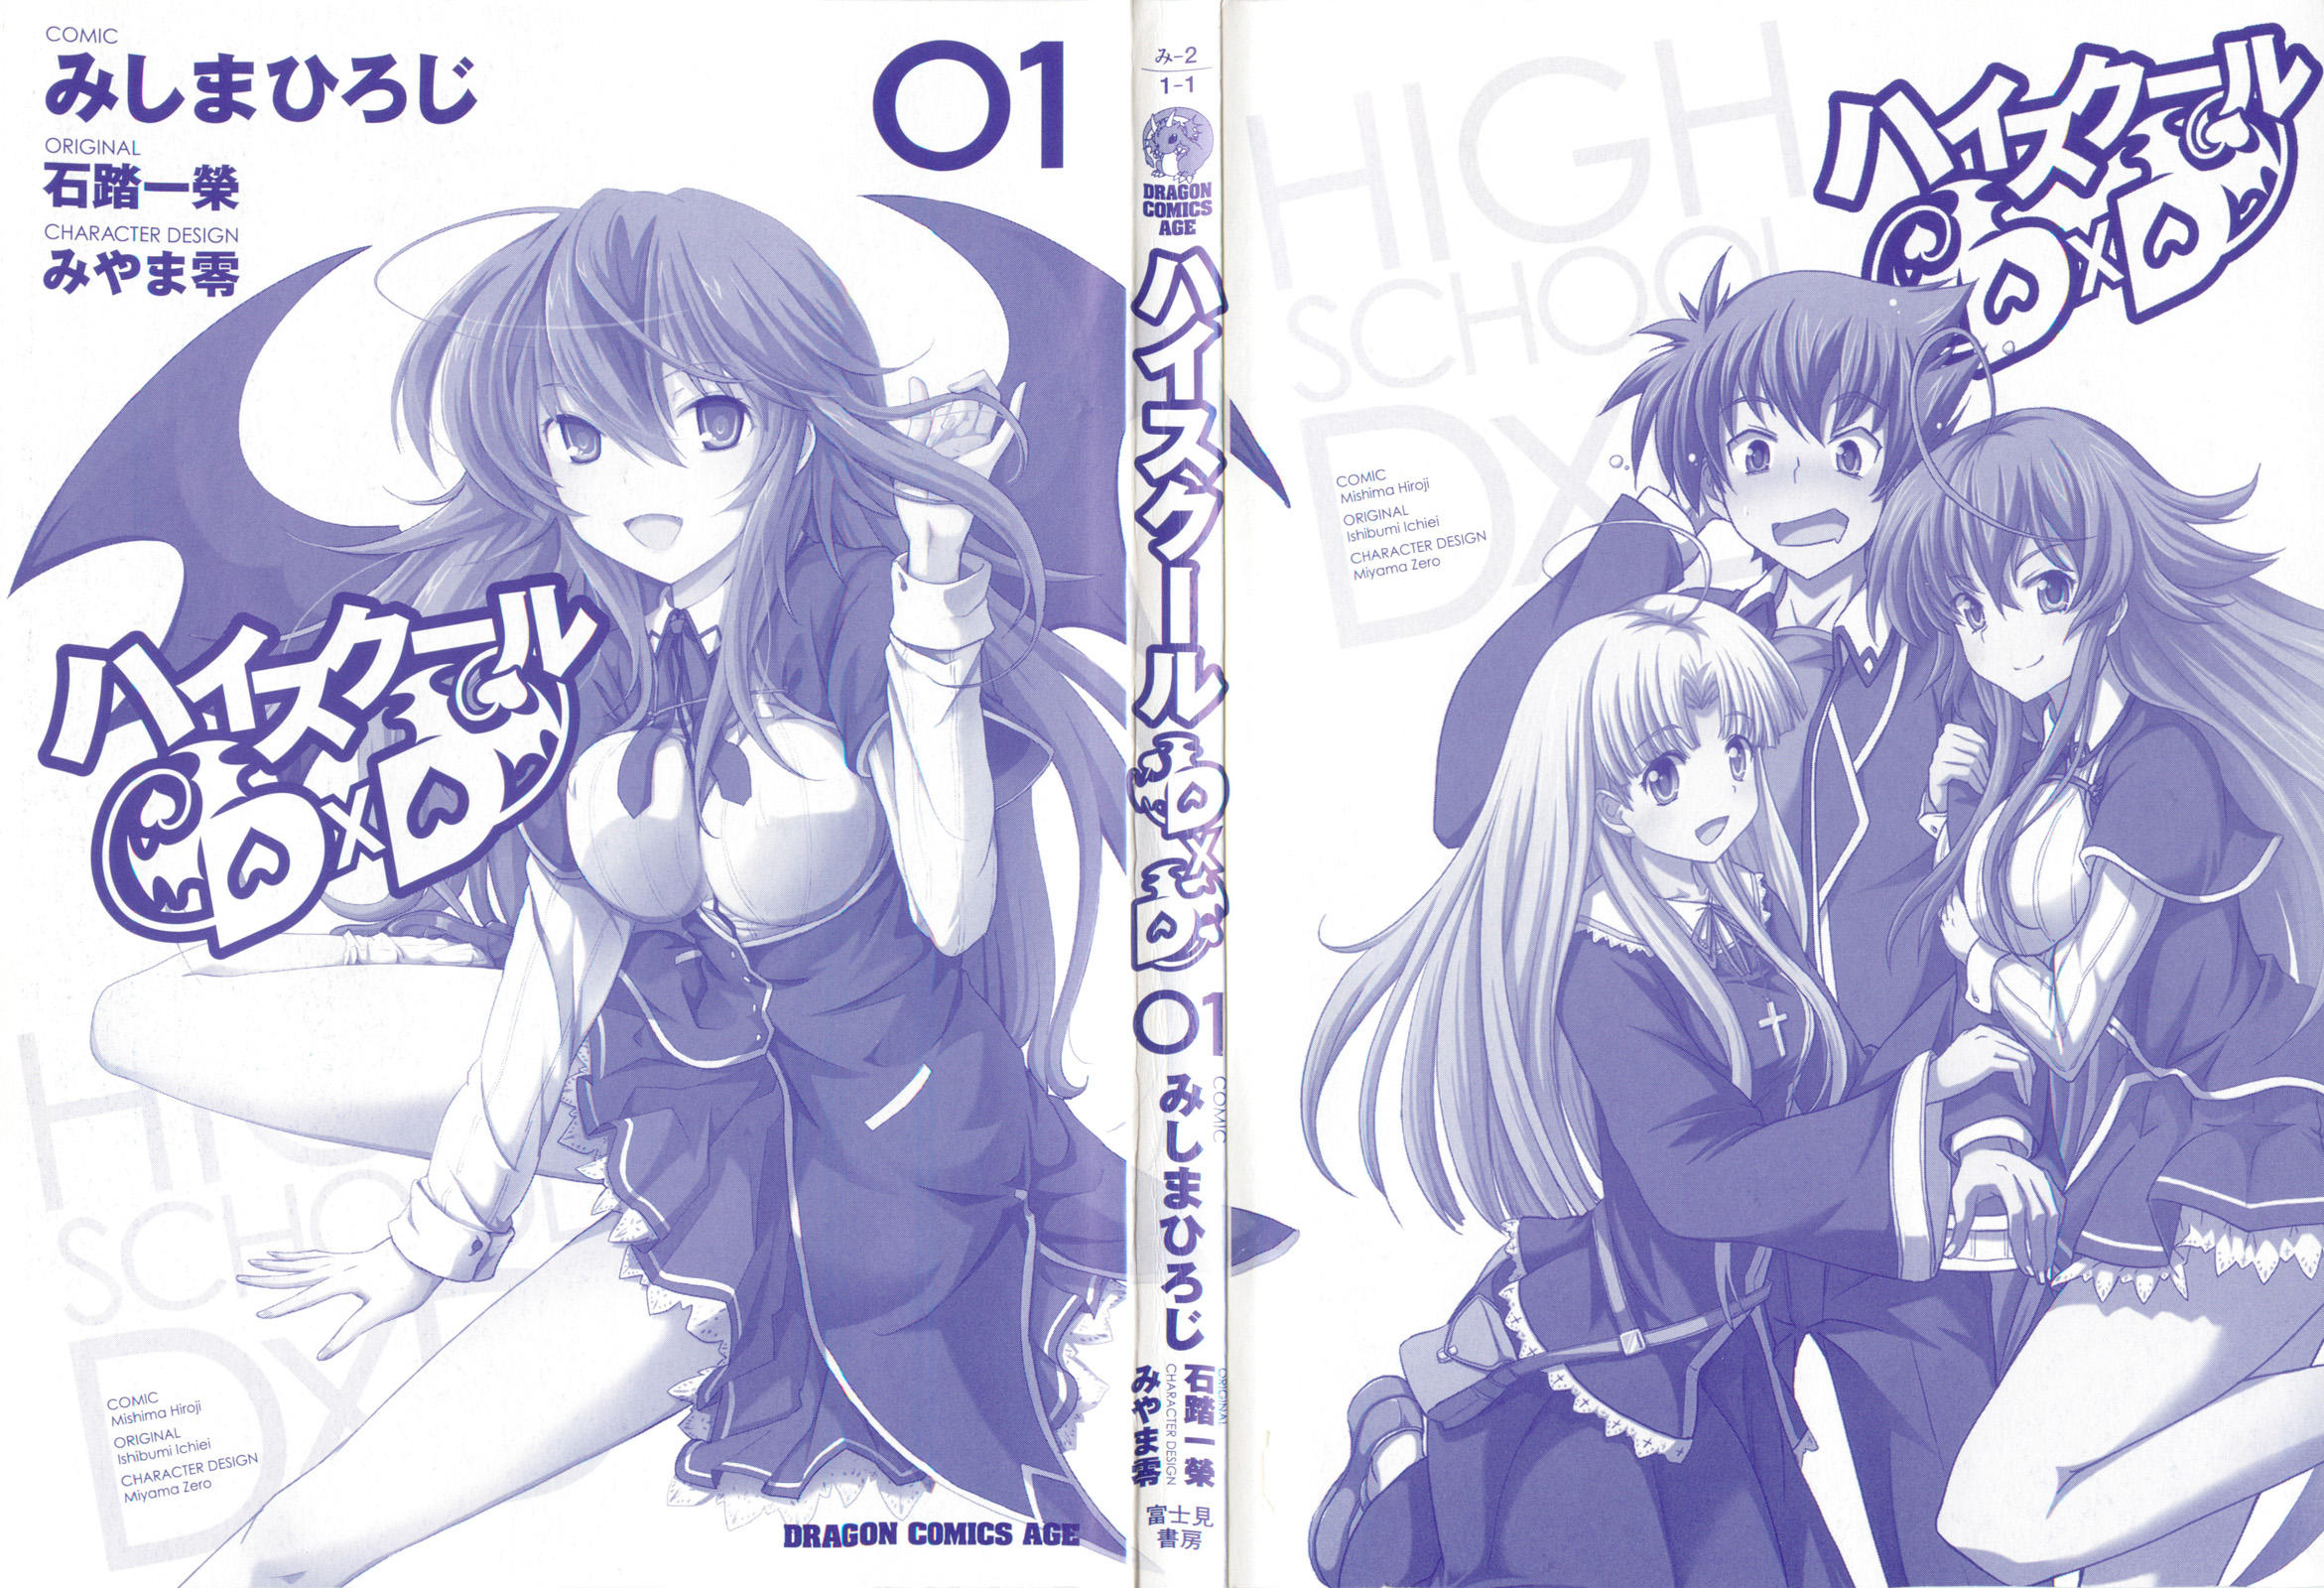 High School DxD, Vol. 1 - manga (High School DxD by Ichiei Ishibumi